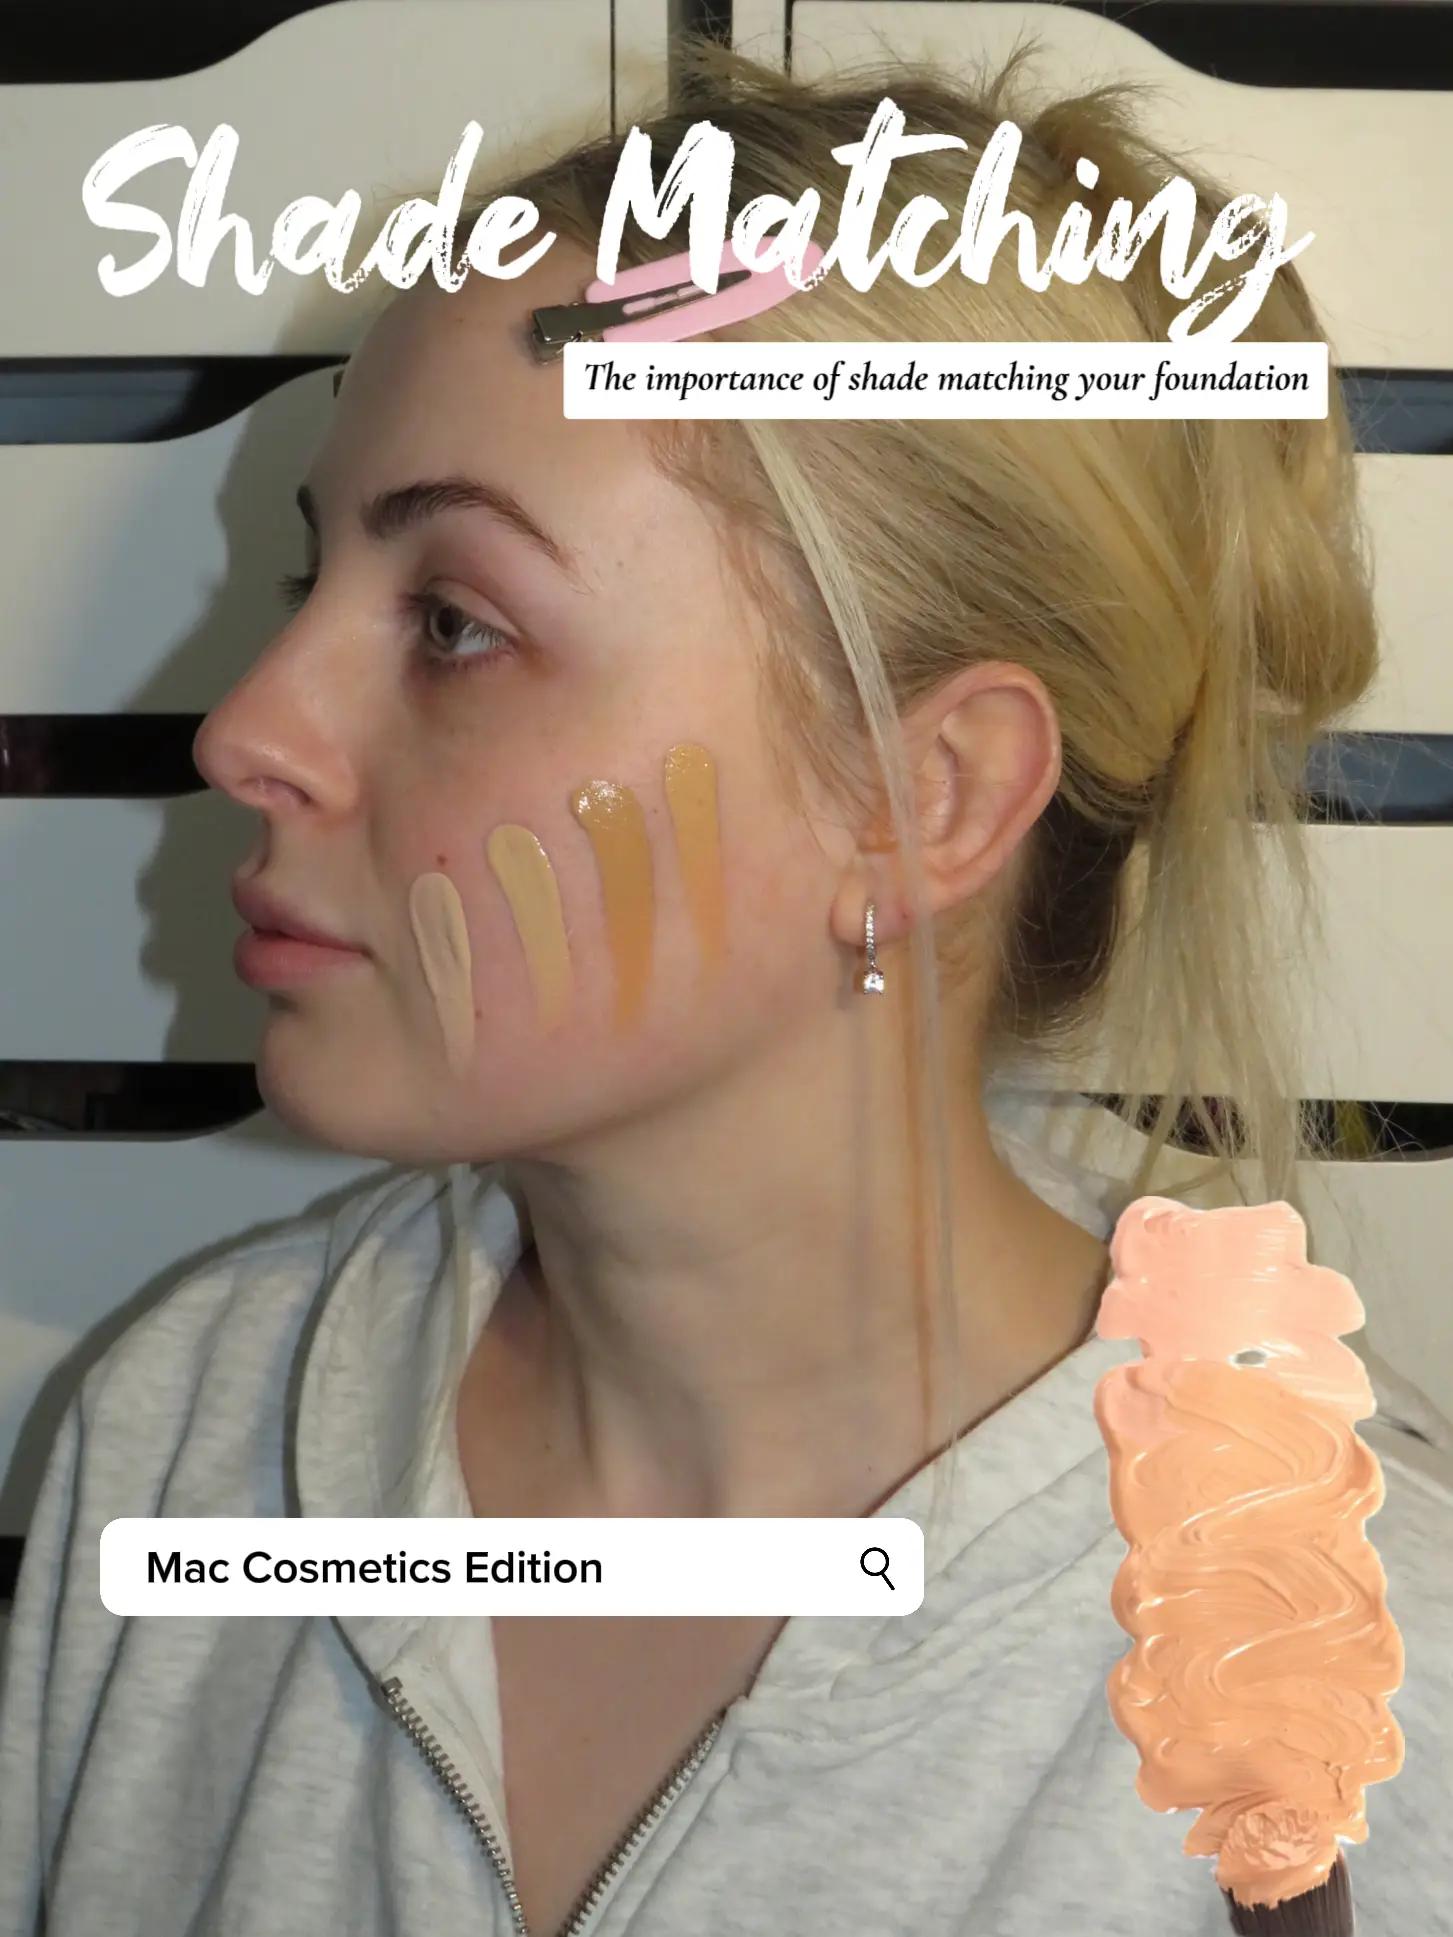 19 Top Mac Cosmetics Makeup Tutorial